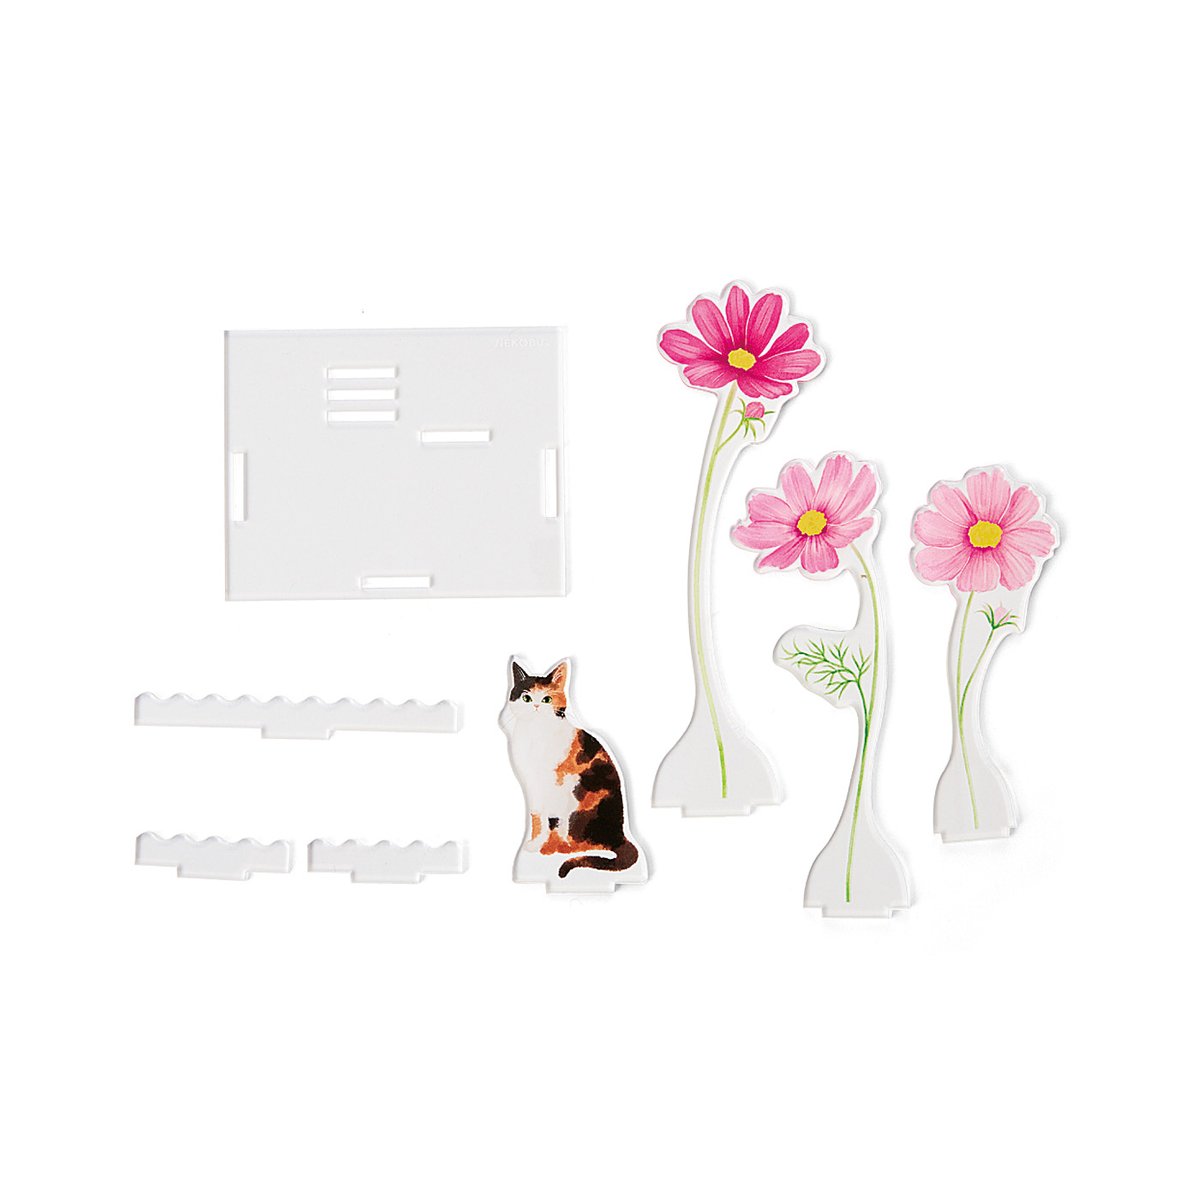 「猫と暮らしていても、お花の美しさが楽しめるアクリルトレイができました   本物の」|フェリシモ「猫部」のイラスト